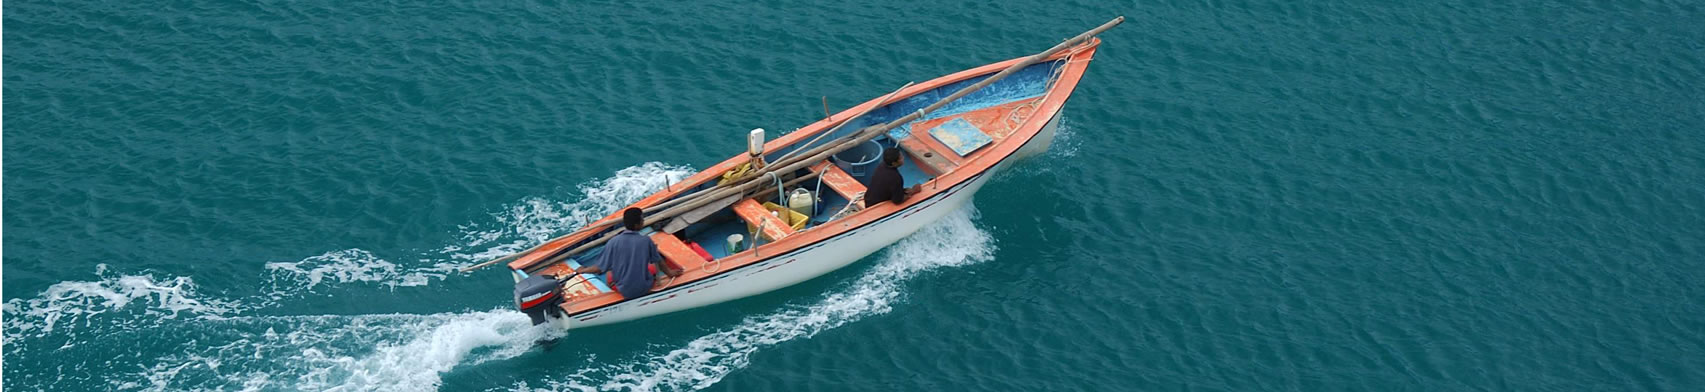 01. pirogue boat fishing